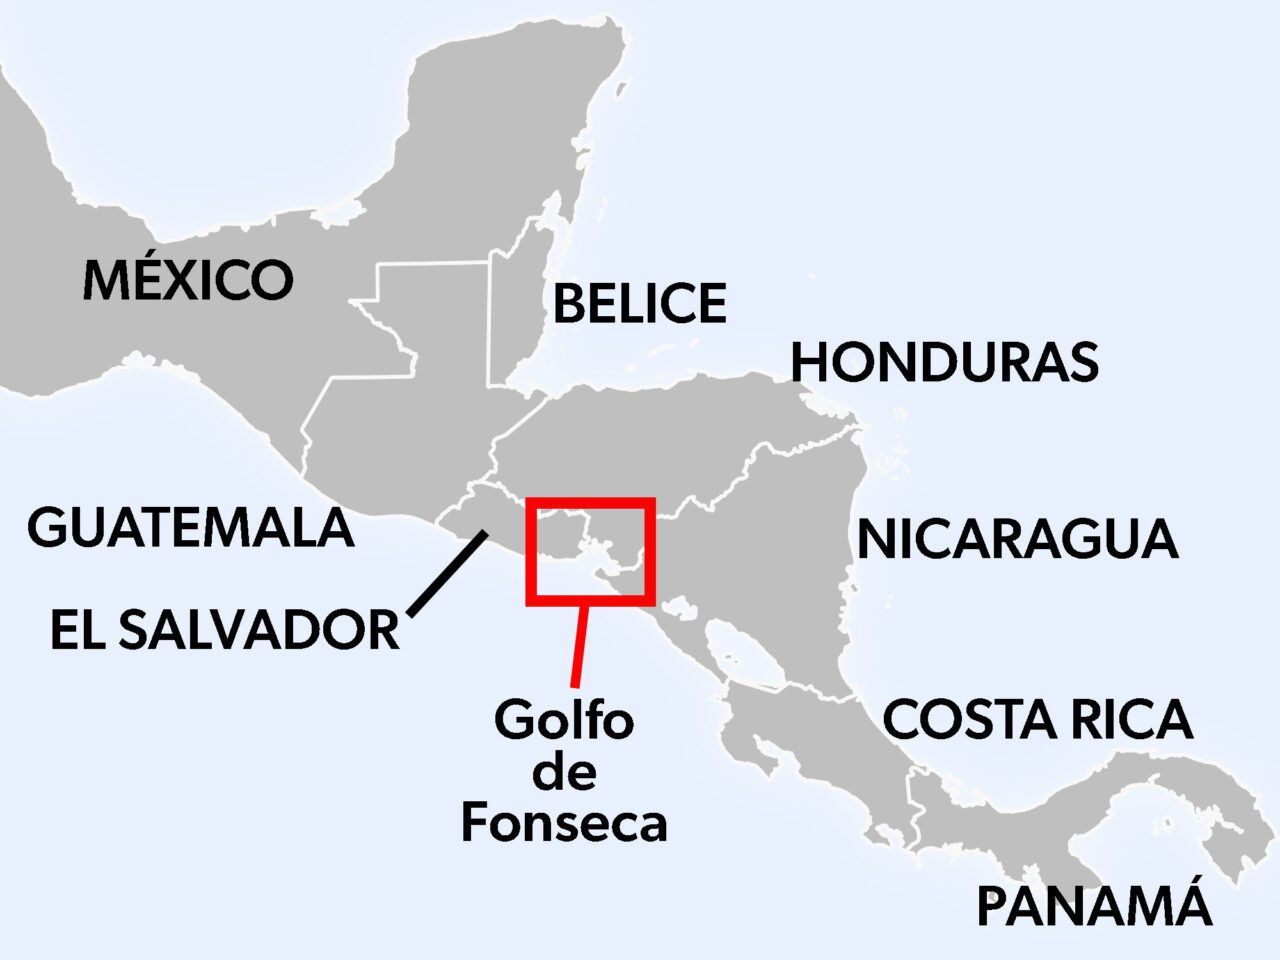 Mapa de Centroamérica (México, Guatemala, El Salvador, Belice, Honduras, Nicaragua, Costa Rica, Panamá) con un cuadrado alrededor del Golfo de Fonseca, Honduras.